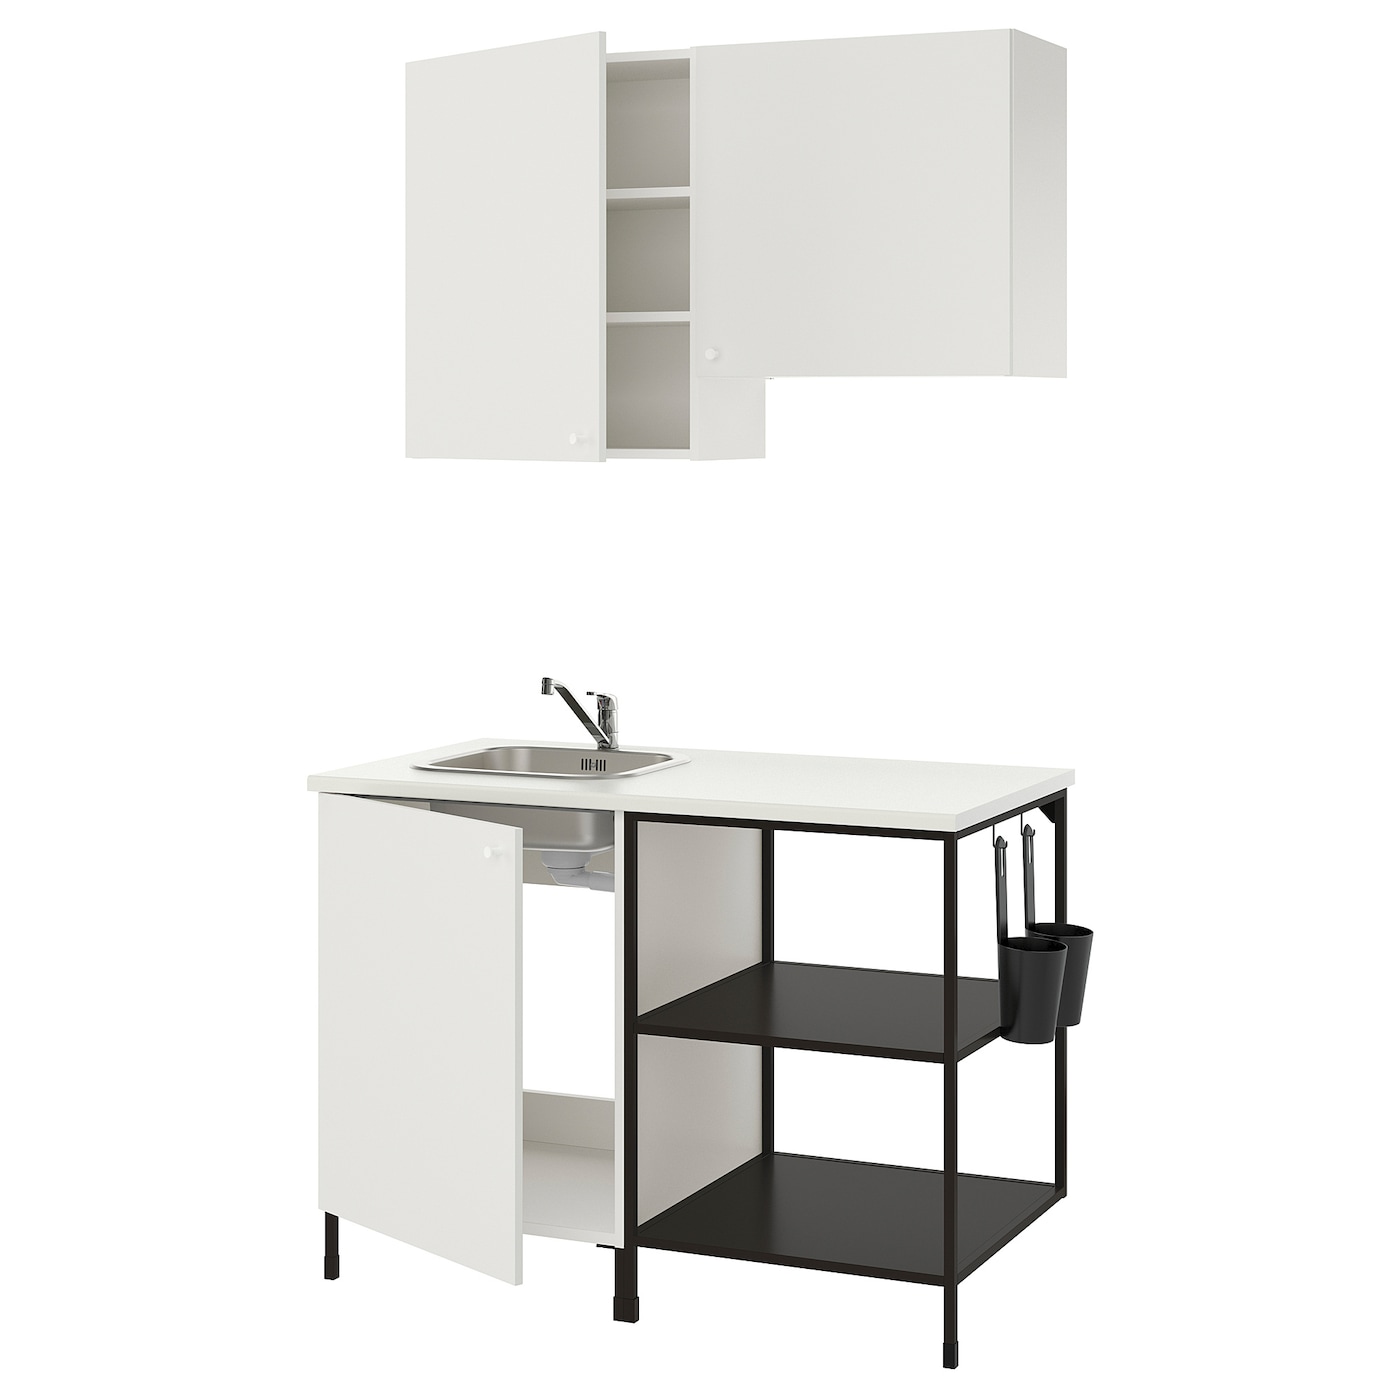 Кухонная комбинация для хранения - ENHET  IKEA/ ЭНХЕТ ИКЕА, 123х63,5х222 см, белый/черный